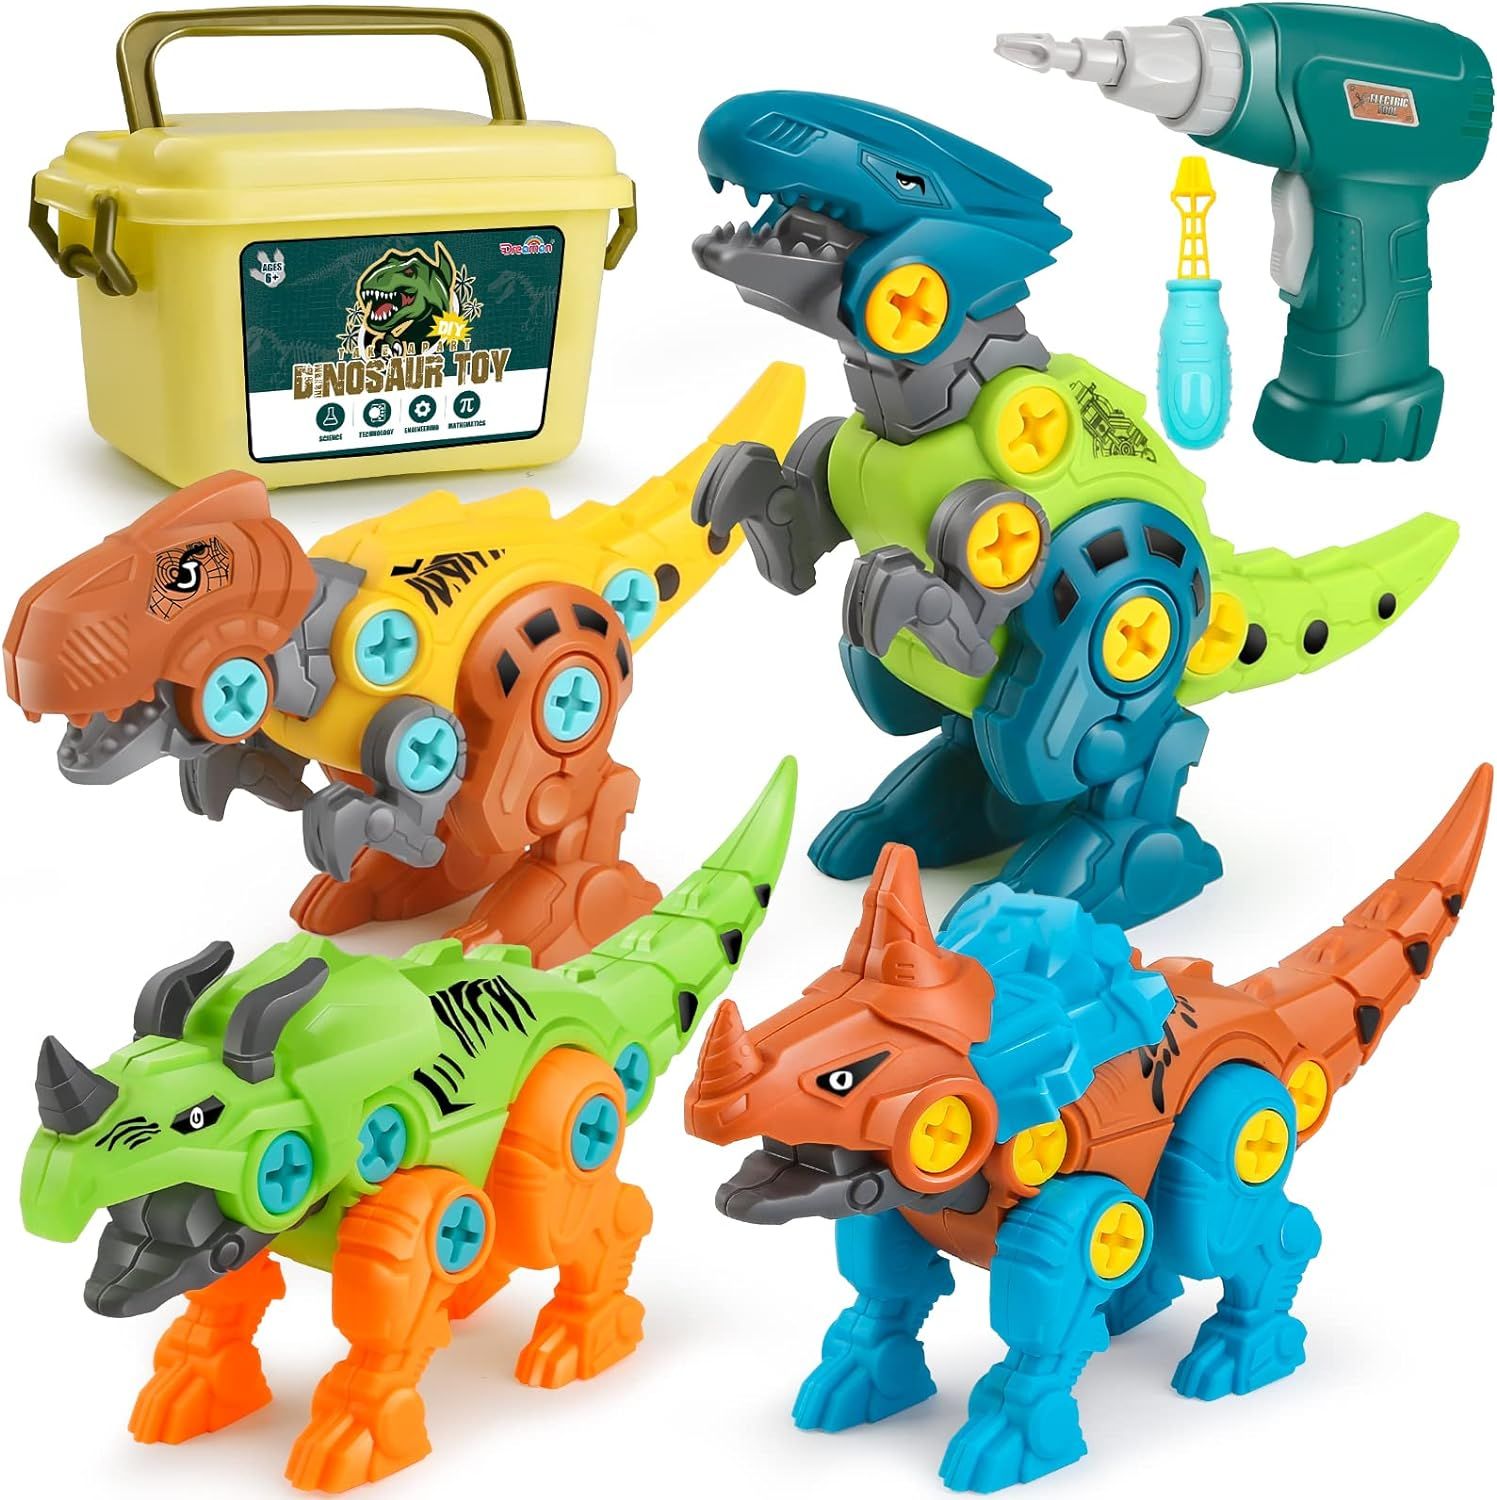 組み立て おもちゃ 恐竜 おもちゃ 2 3 4 5 6 歳 男の子 女の子 子供 人気 工具 知育玩具 ランキング 電動ドリル 大工さん 誕生日プレゼント